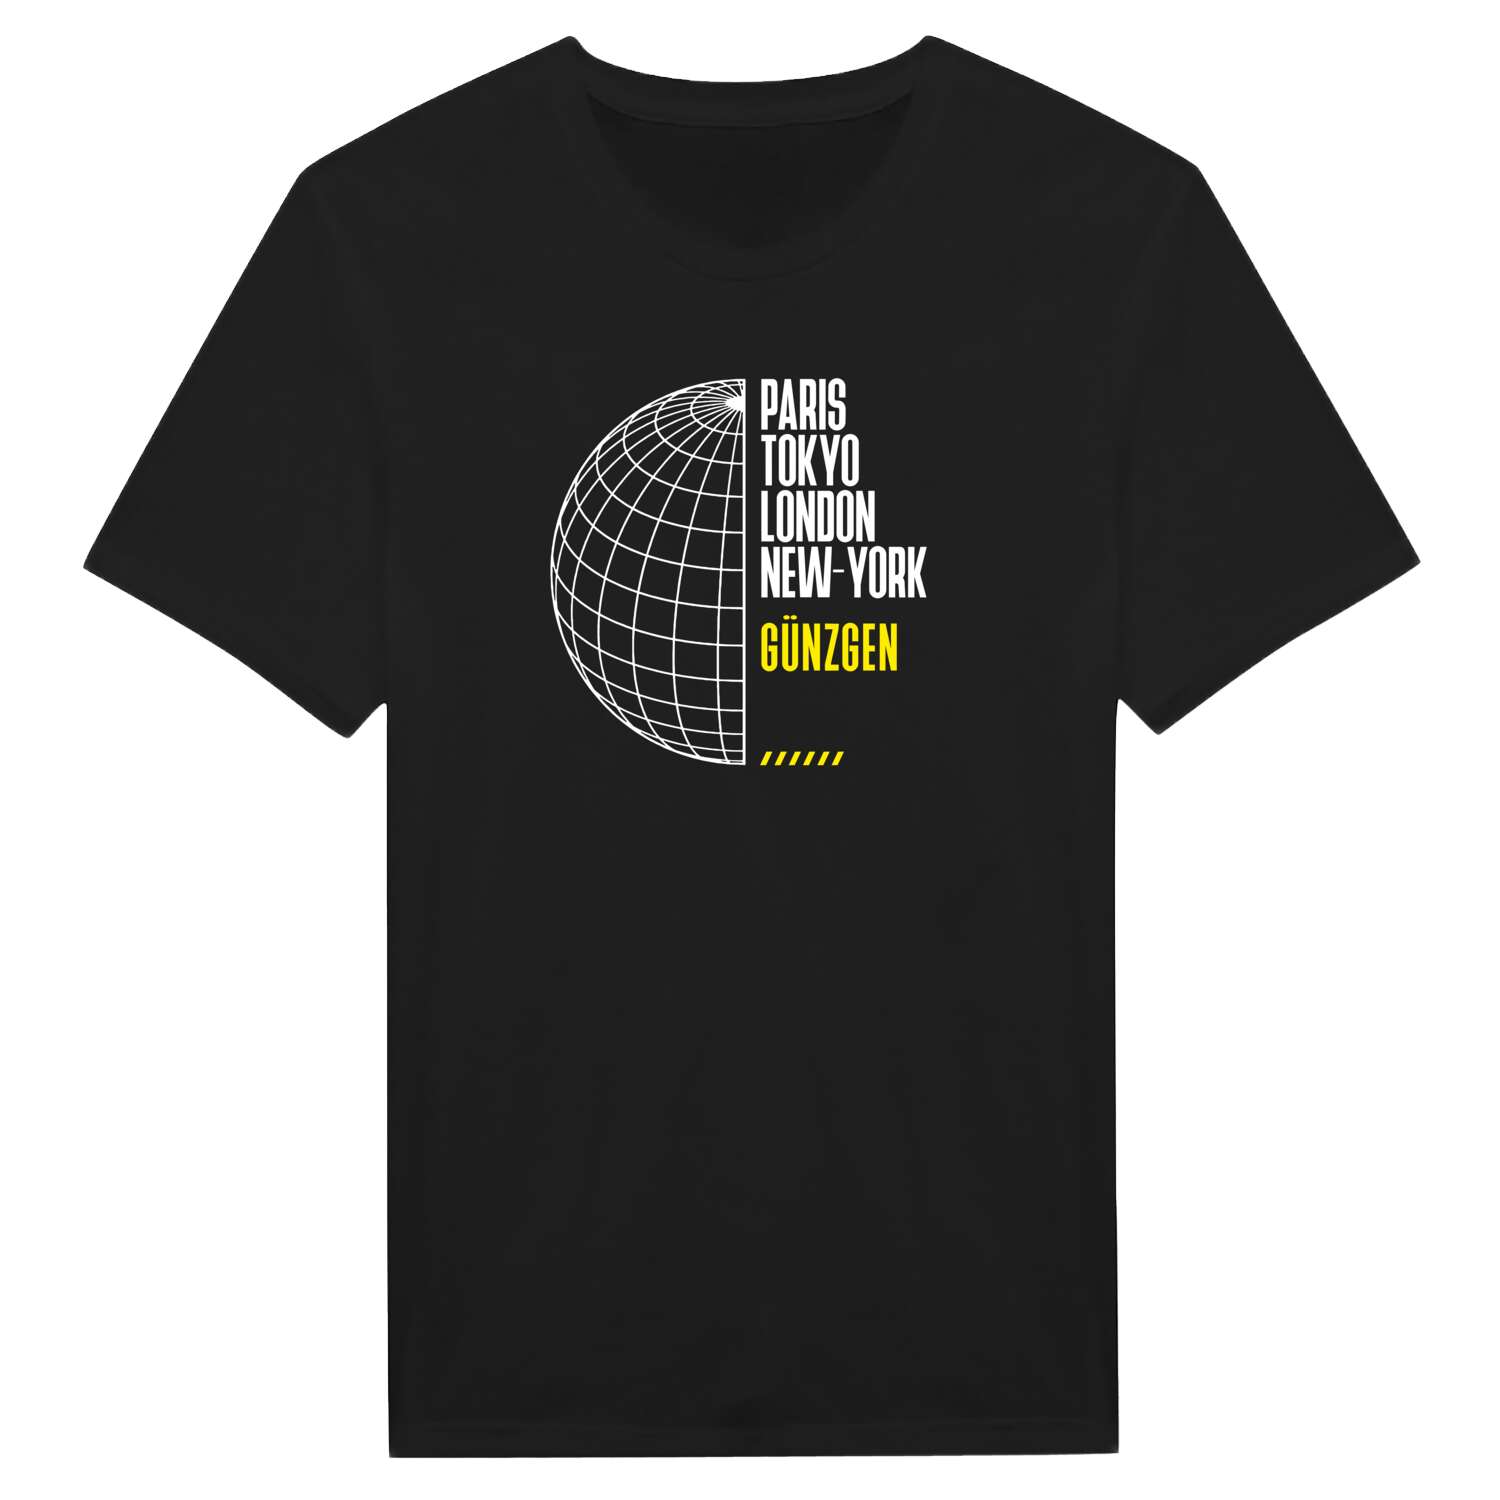 Günzgen T-Shirt »Paris Tokyo London«